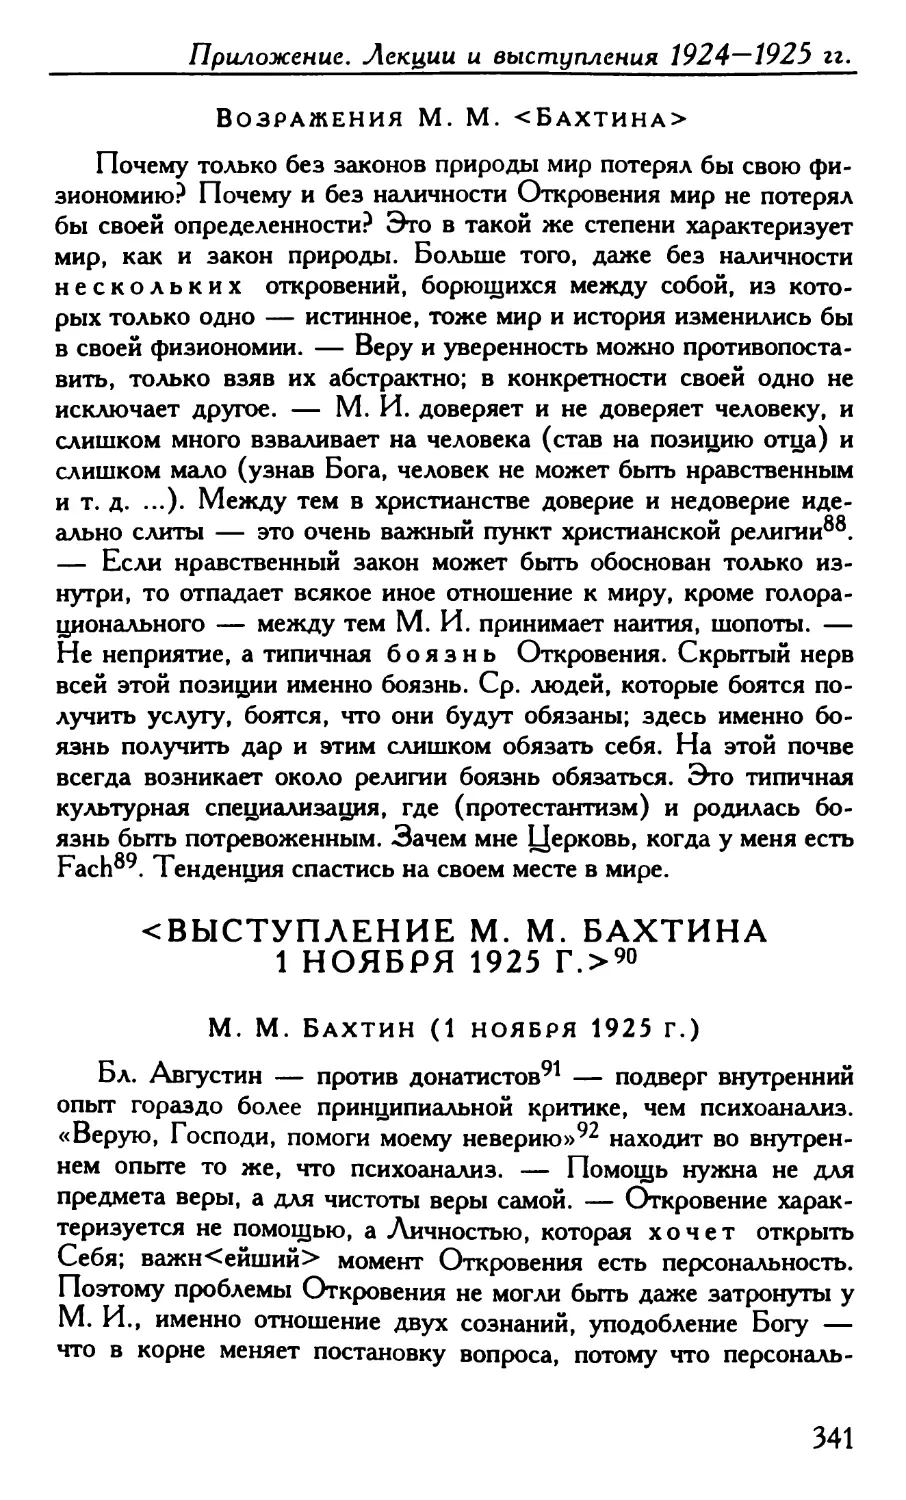 <выступление M. M. Бахтина 1 ноября 1925 г>